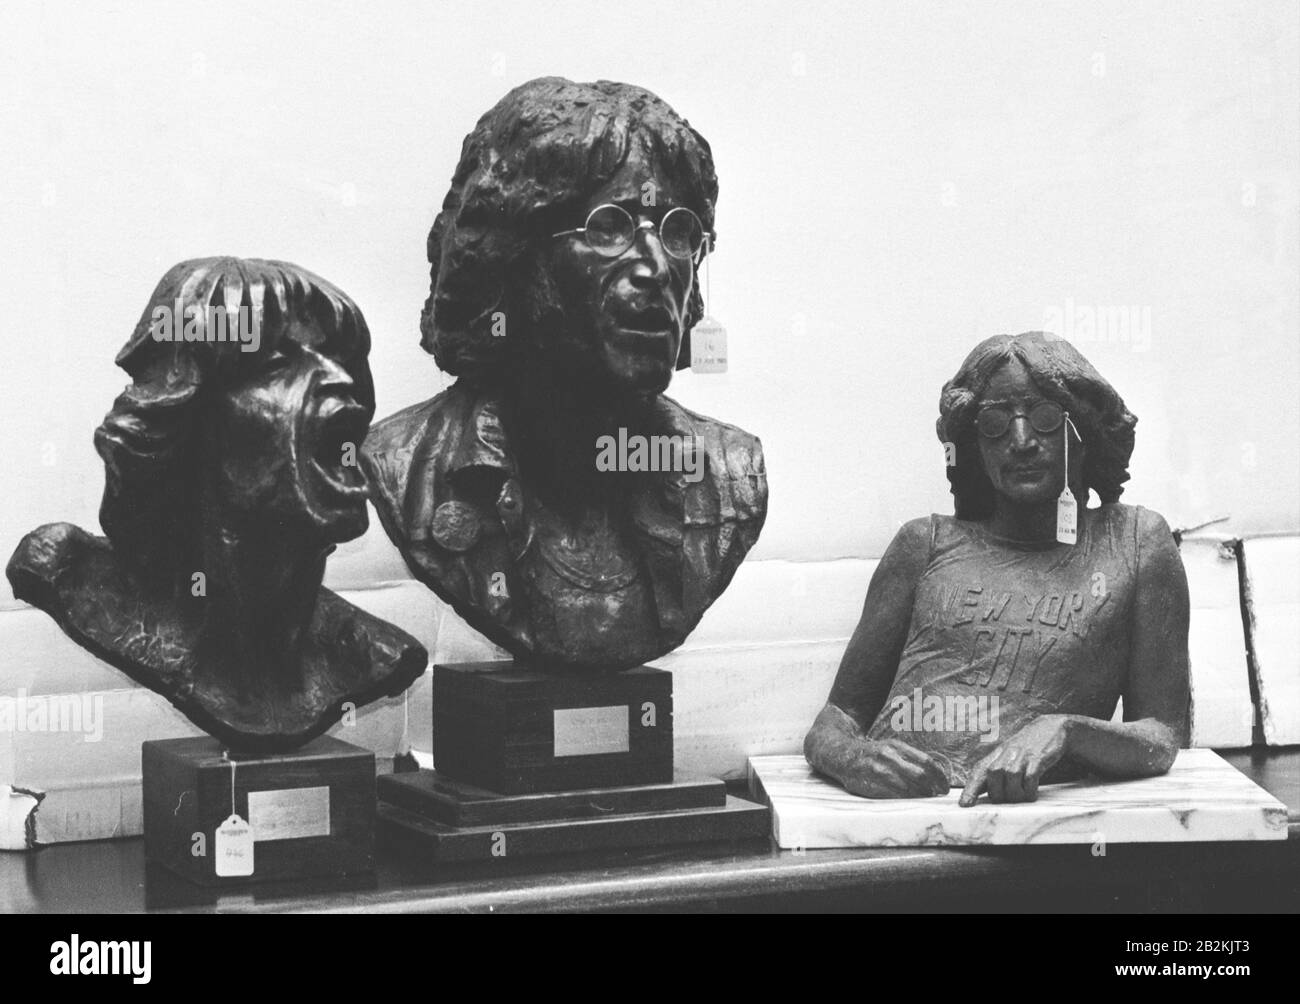 Zwei Bronzen von Ex-Beatle, der verstorbene John Lennon, und einer von Rolling-Stones-Frontmann Mick Jagger, die bei Sotheby's London versteigert werden, sind Teil der Auktionierartikel, die in ihren Rock 'n' Roll Memorabilia 1956-1984 im Verkauf angeboten werden. Stockfoto